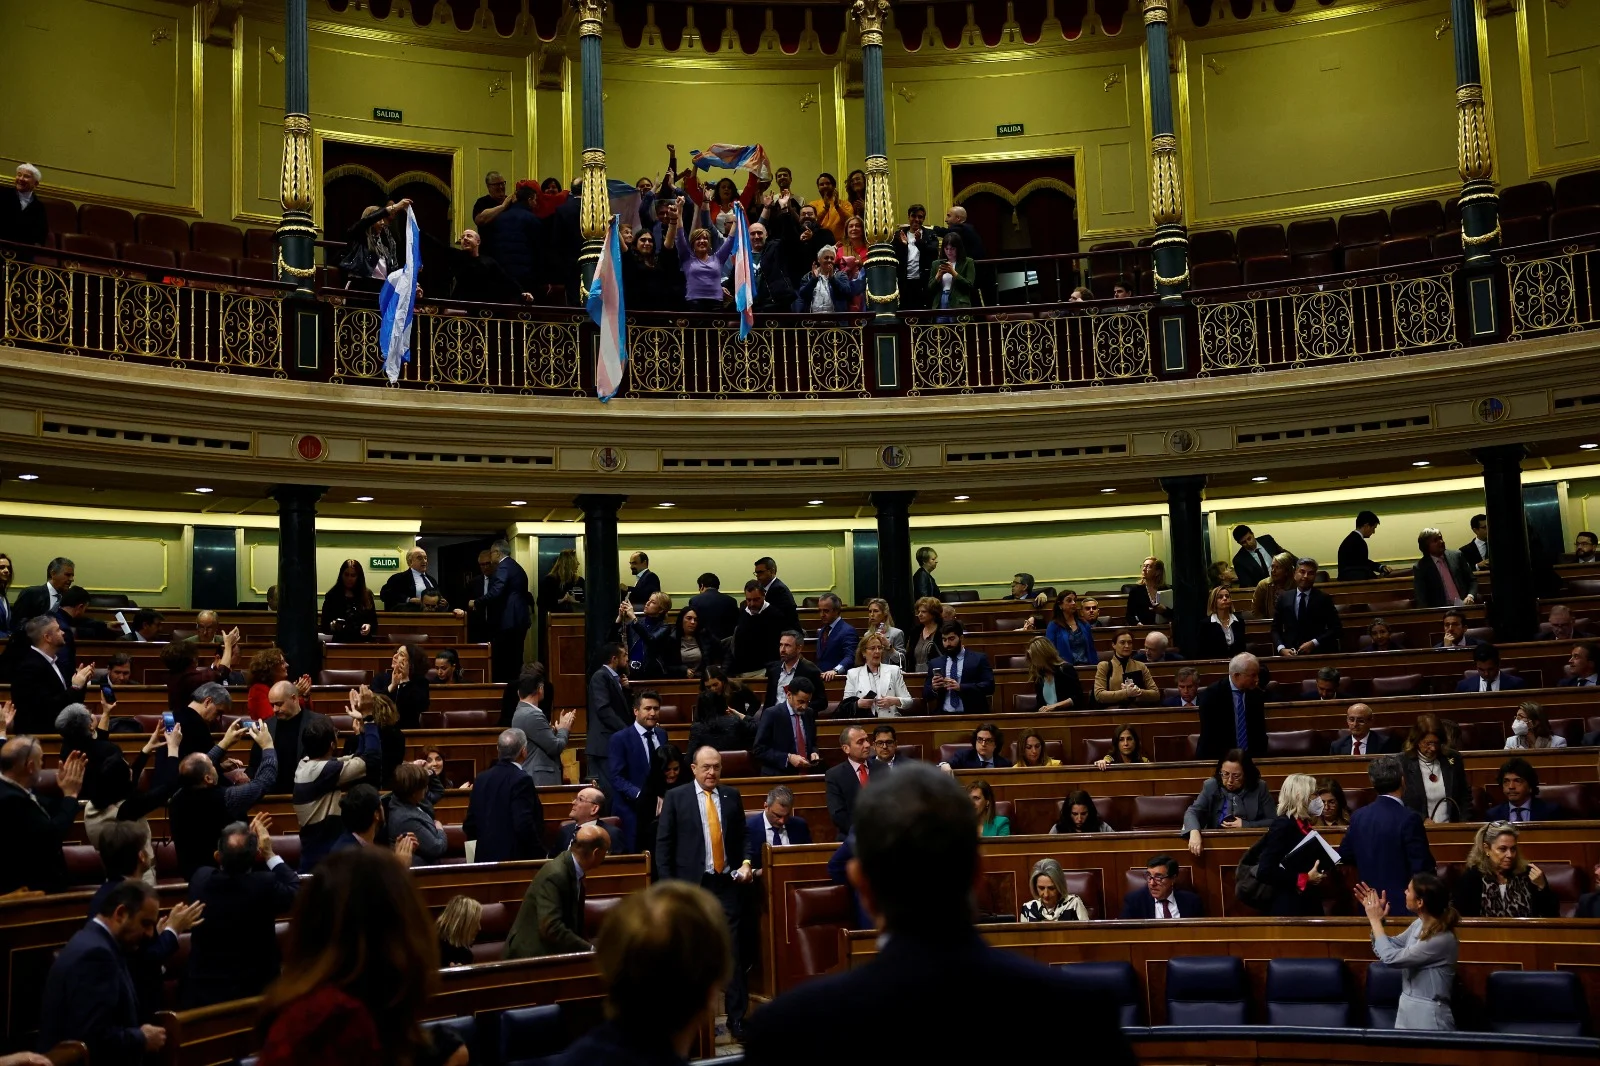 חגיגות הקהילה הטרנסג'נדרית בפרלמנט הספרדי לאחר העברת החוקים